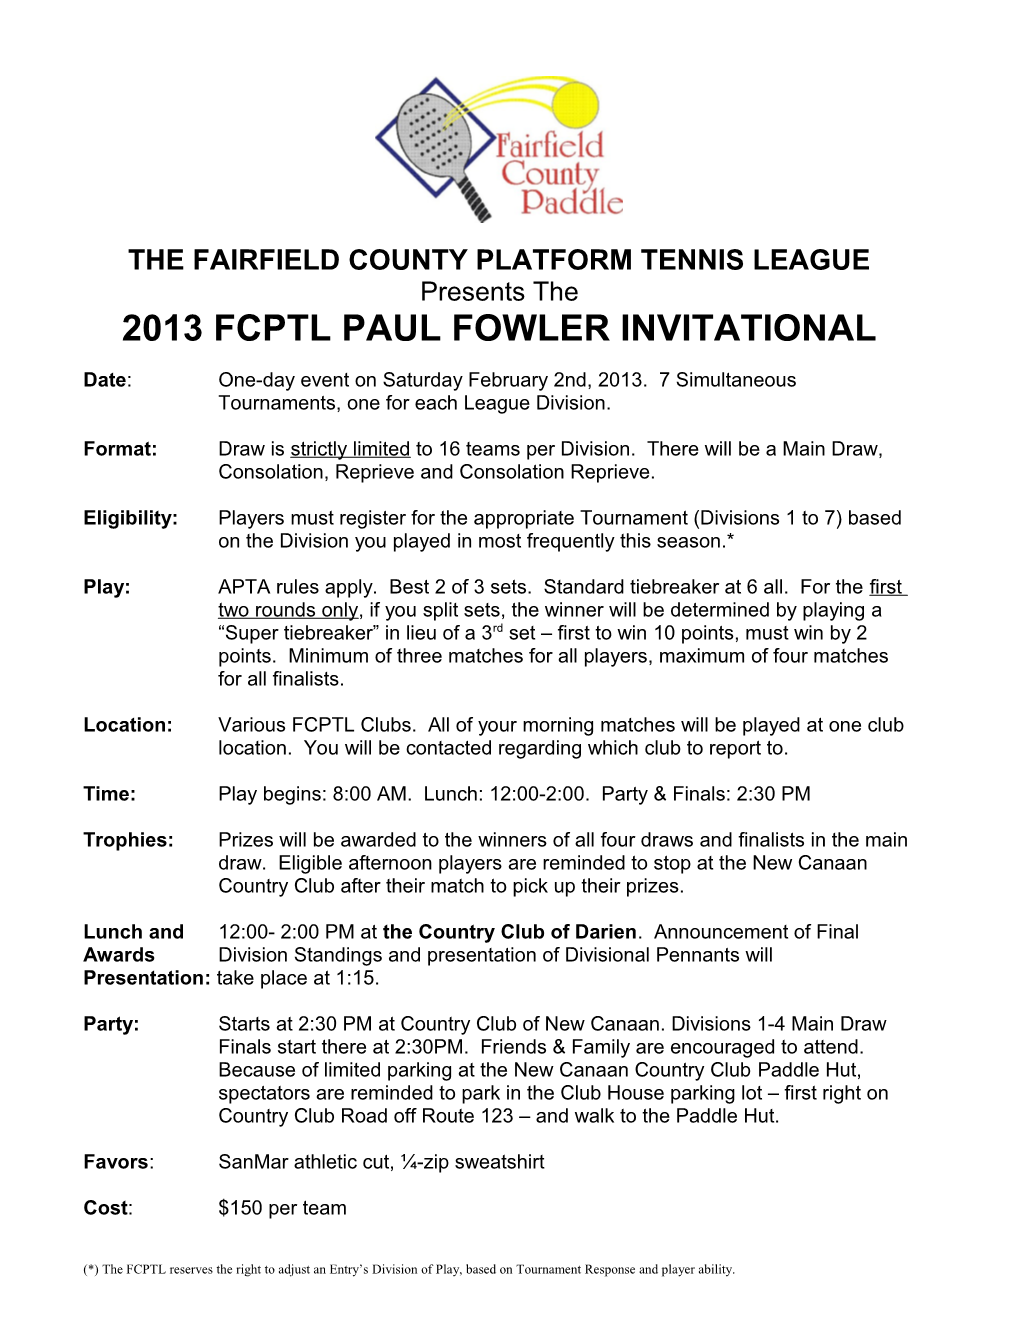 The Fairfieldcounty Platform Tennis League